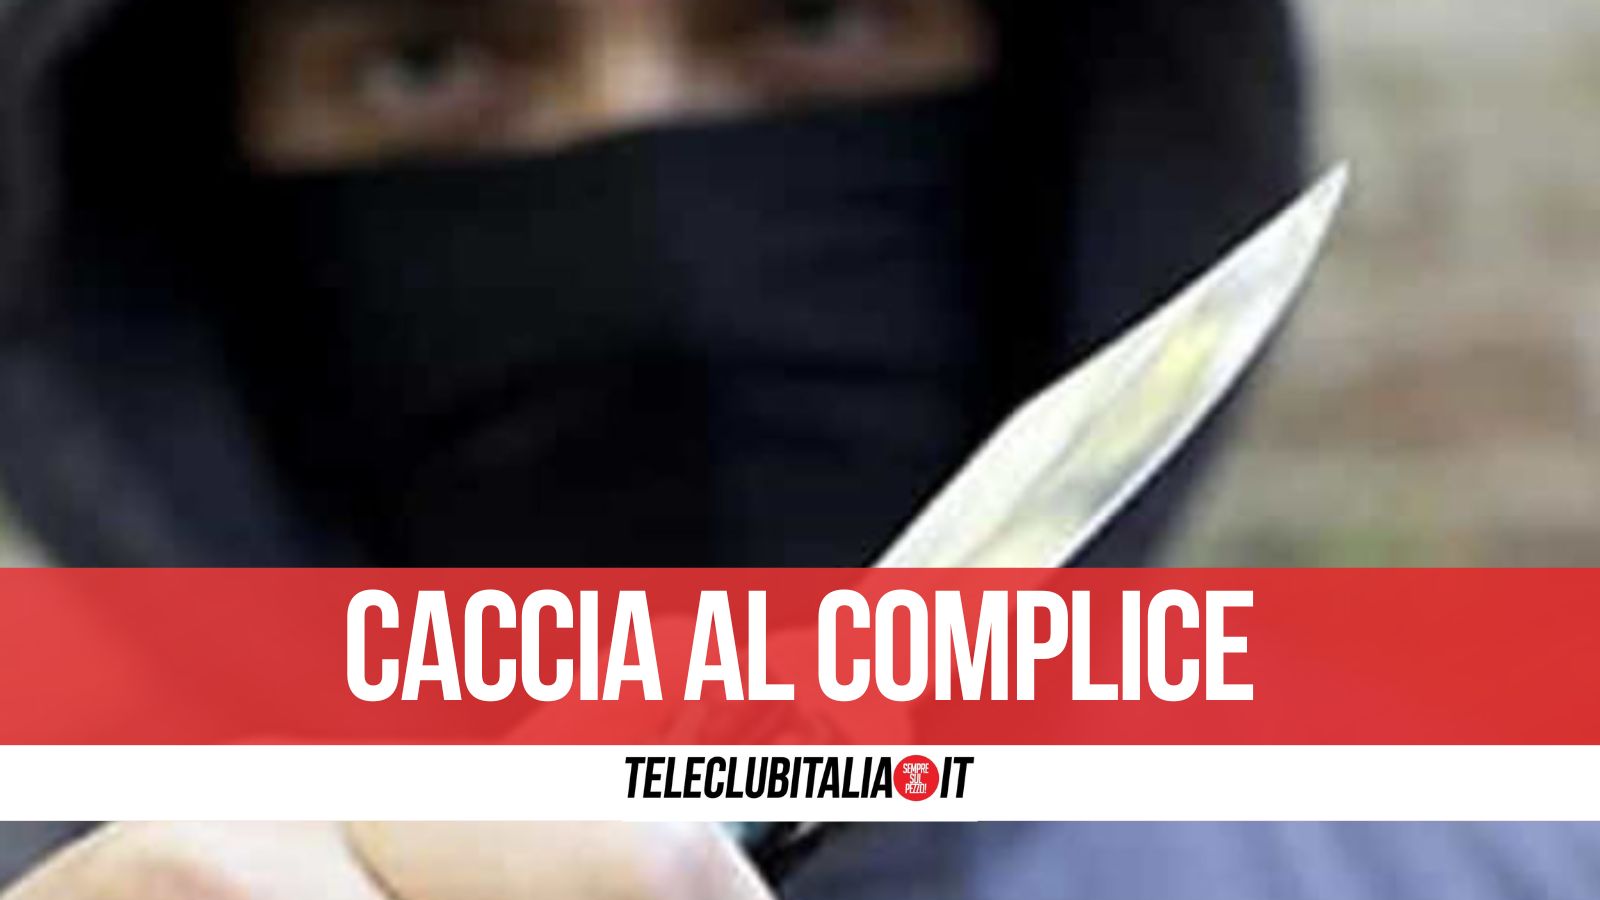 Napoli, coltello alla gola per rubare un cellulare: arrestato 29enne